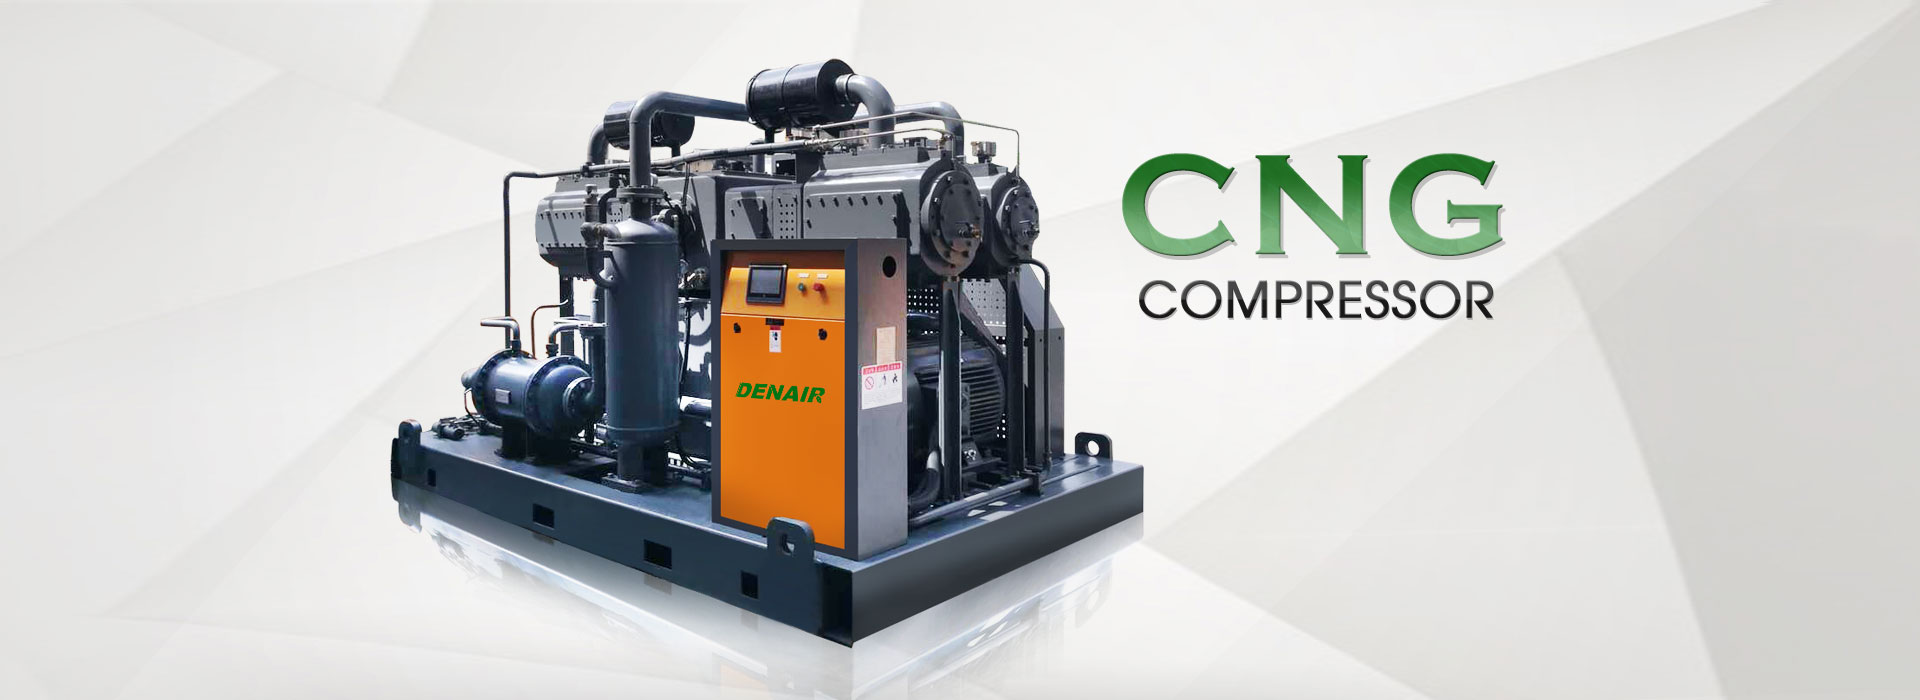 CNG Compressor